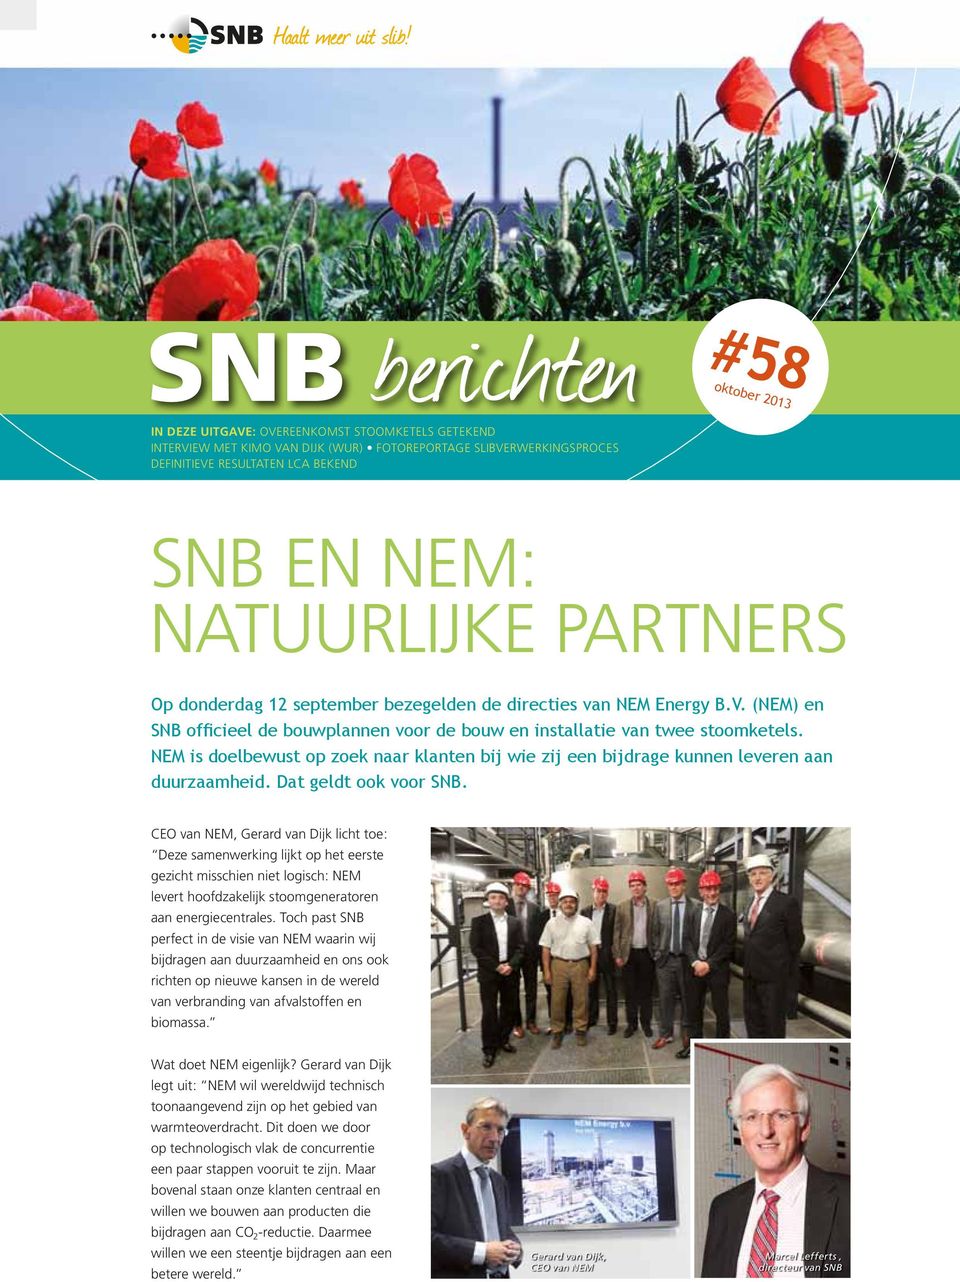 NEM is doelbewust op zoek naar klanten bij wie zij een bijdrage kunnen leveren aan duurzaamheid. Dat geldt ook voor SNB.